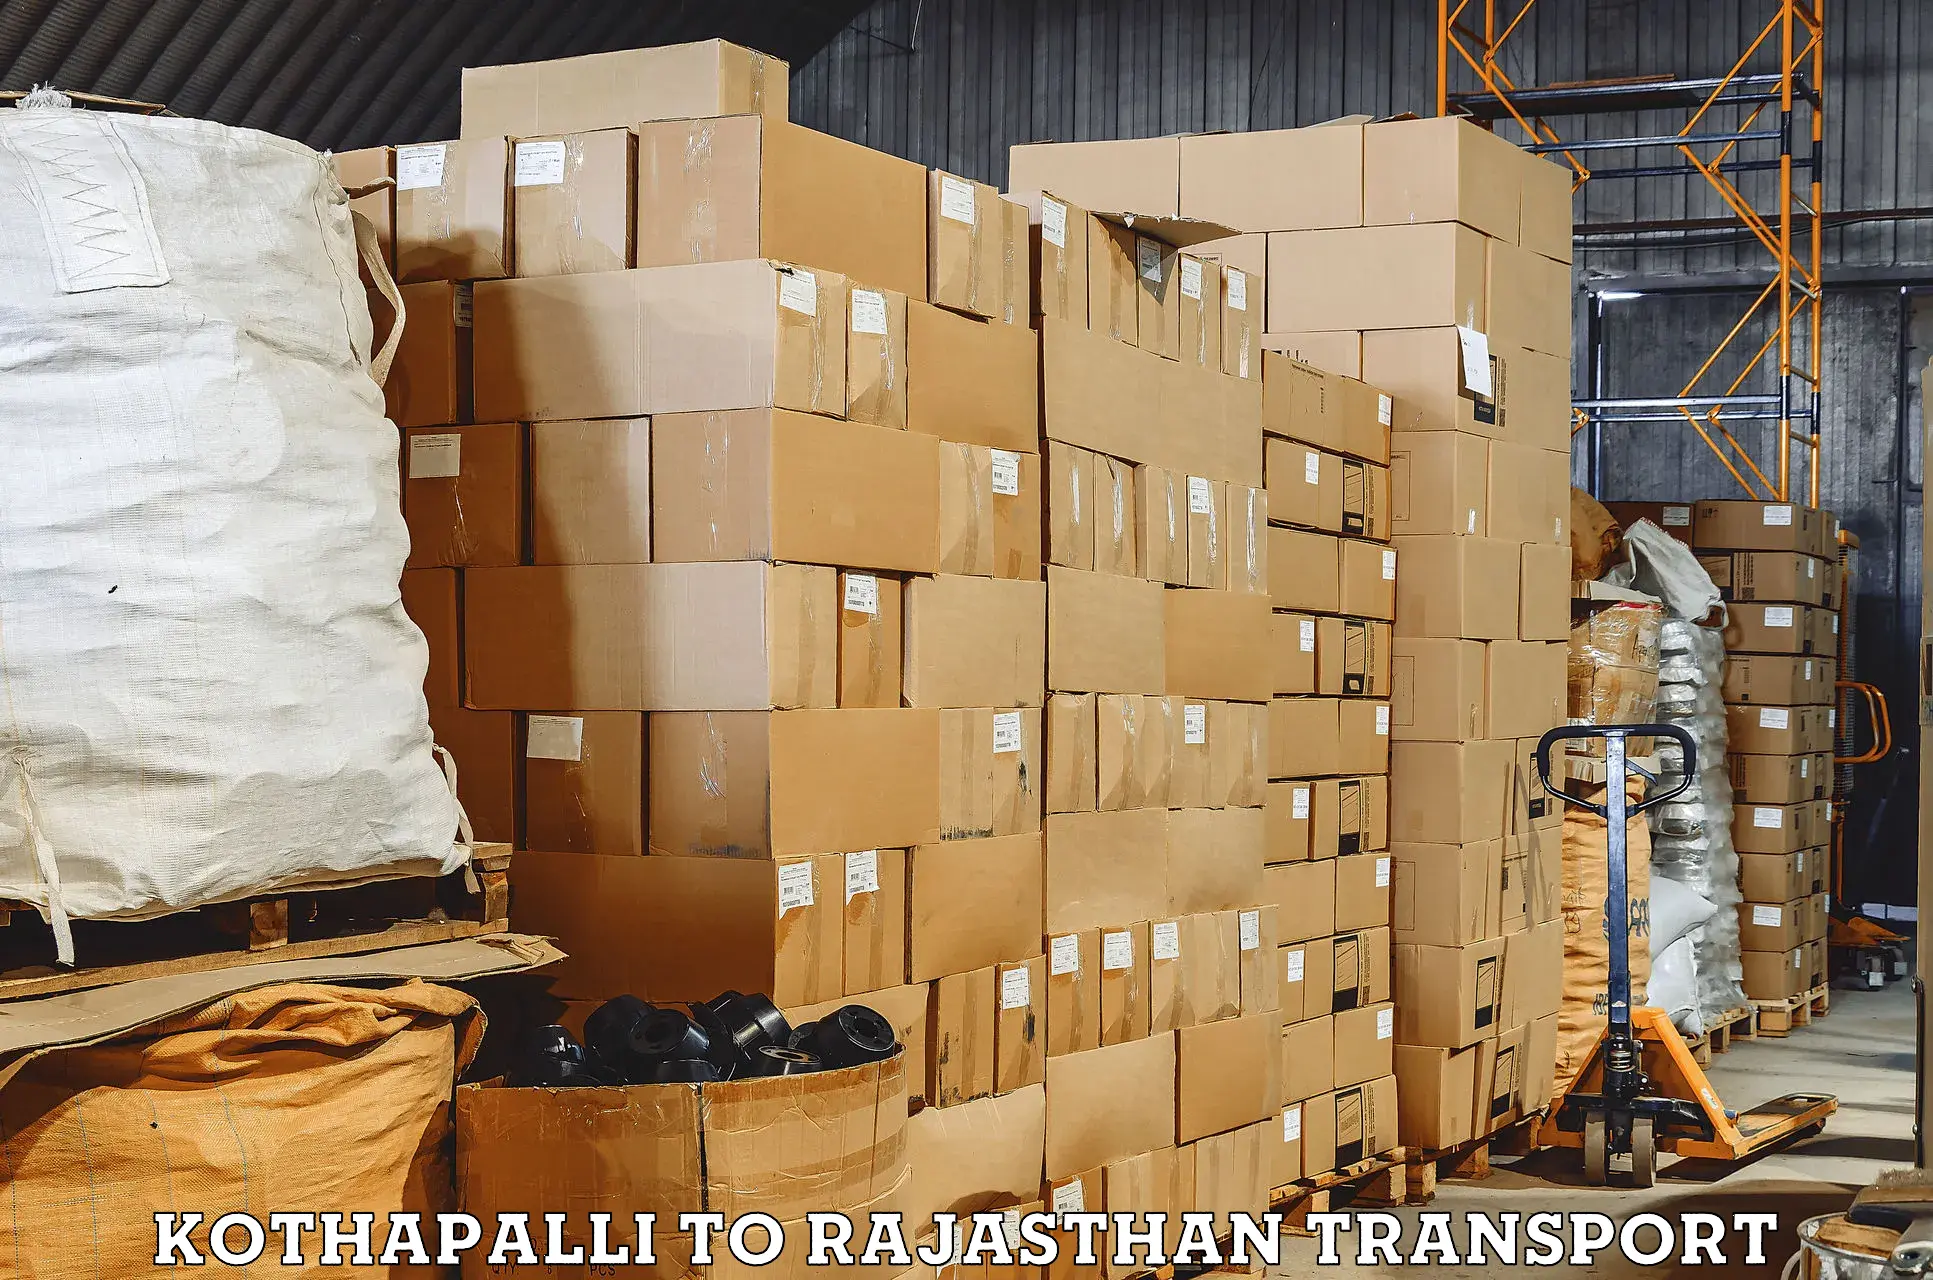 Bike shipping service Kothapalli to Rawatsar